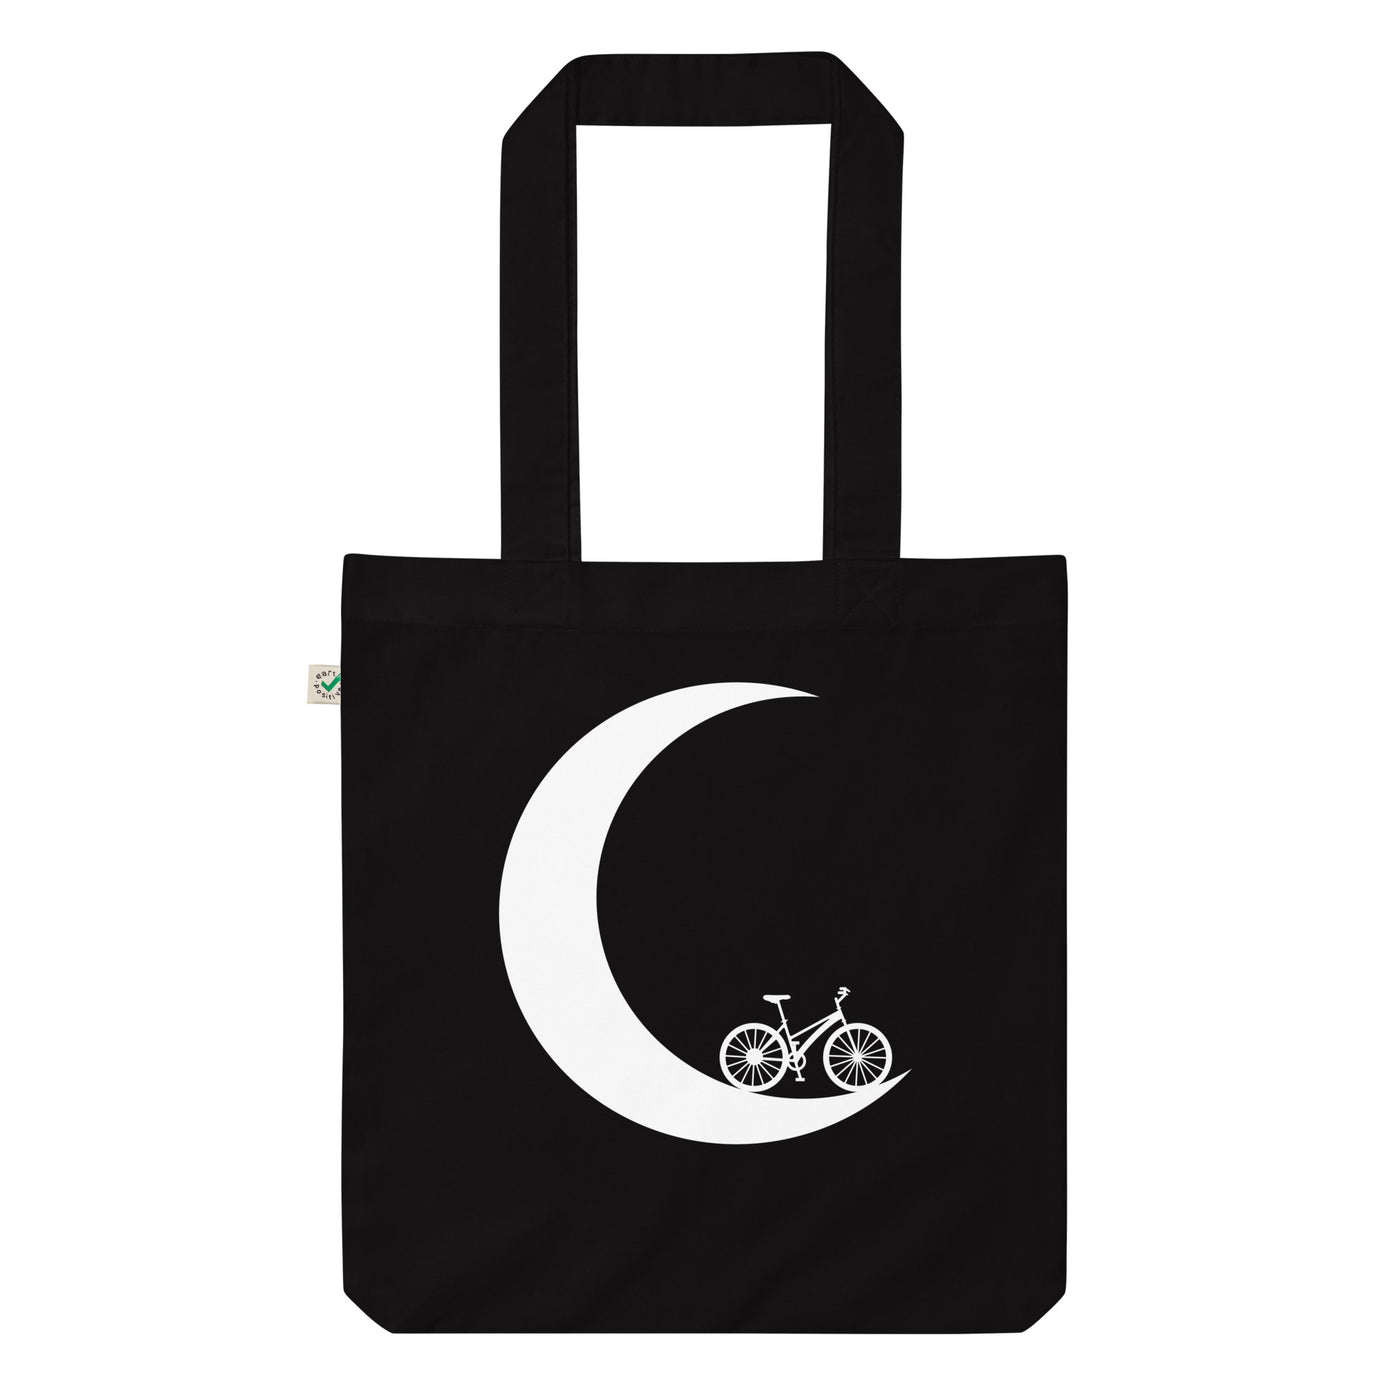 Halbmond - Radfahren - Organic Einkaufstasche fahrrad